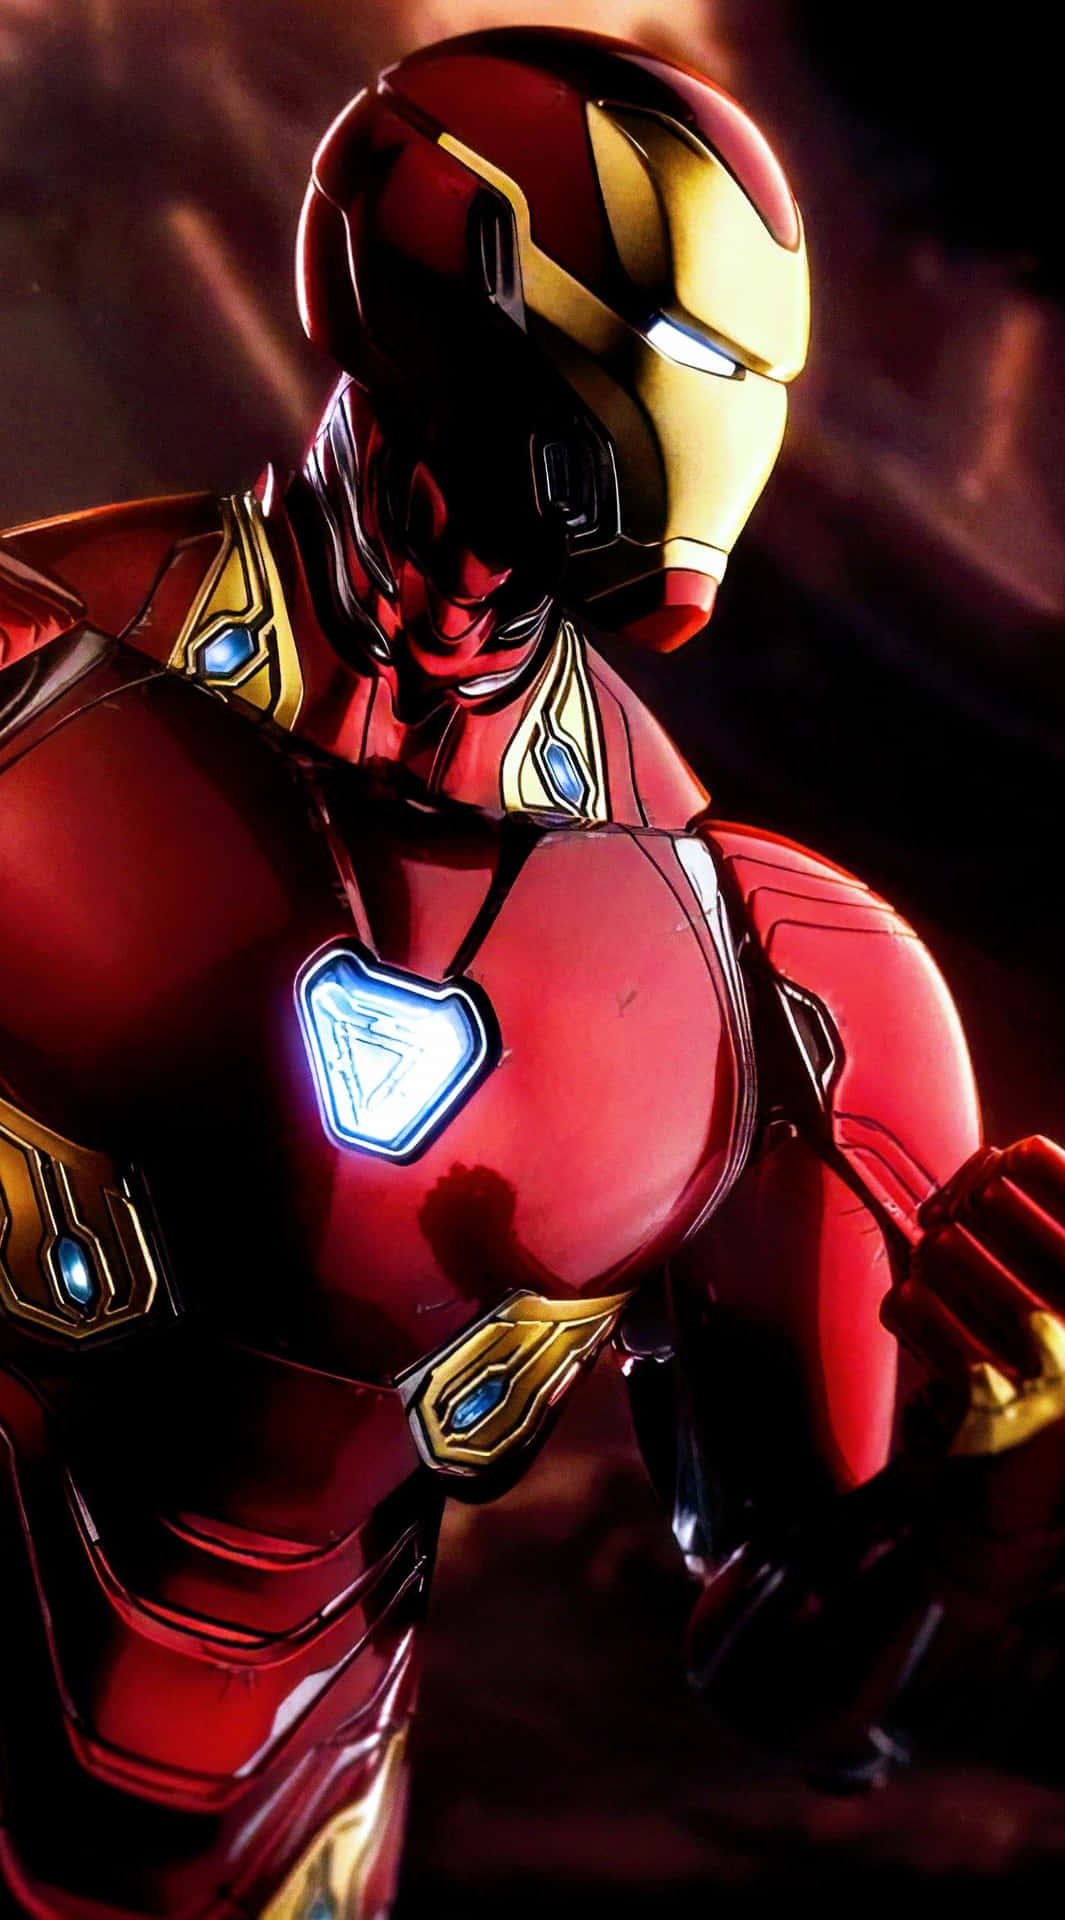 Immaginedigitale D'arte Estetica Di Iron Man Rosso